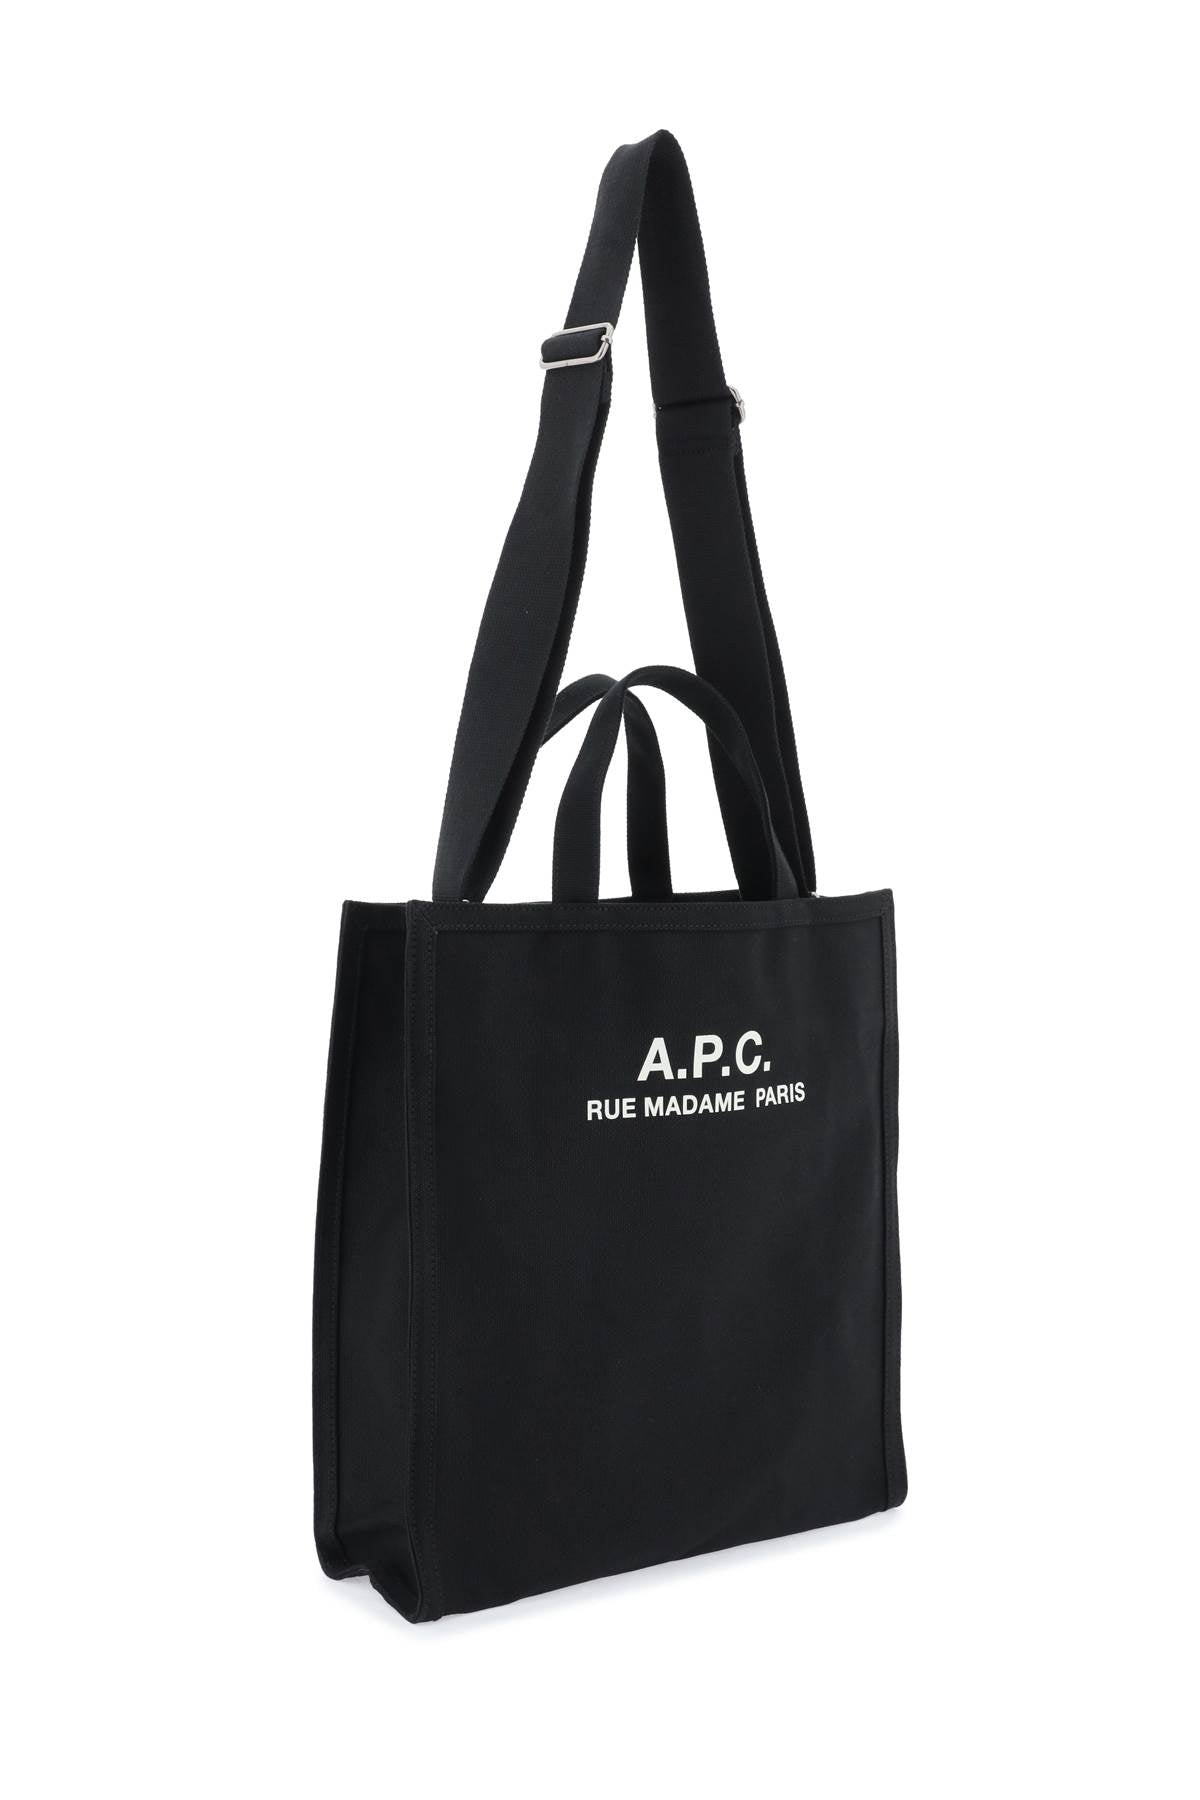 A.P.C. Récupération Canvas Shopping Bag   Black